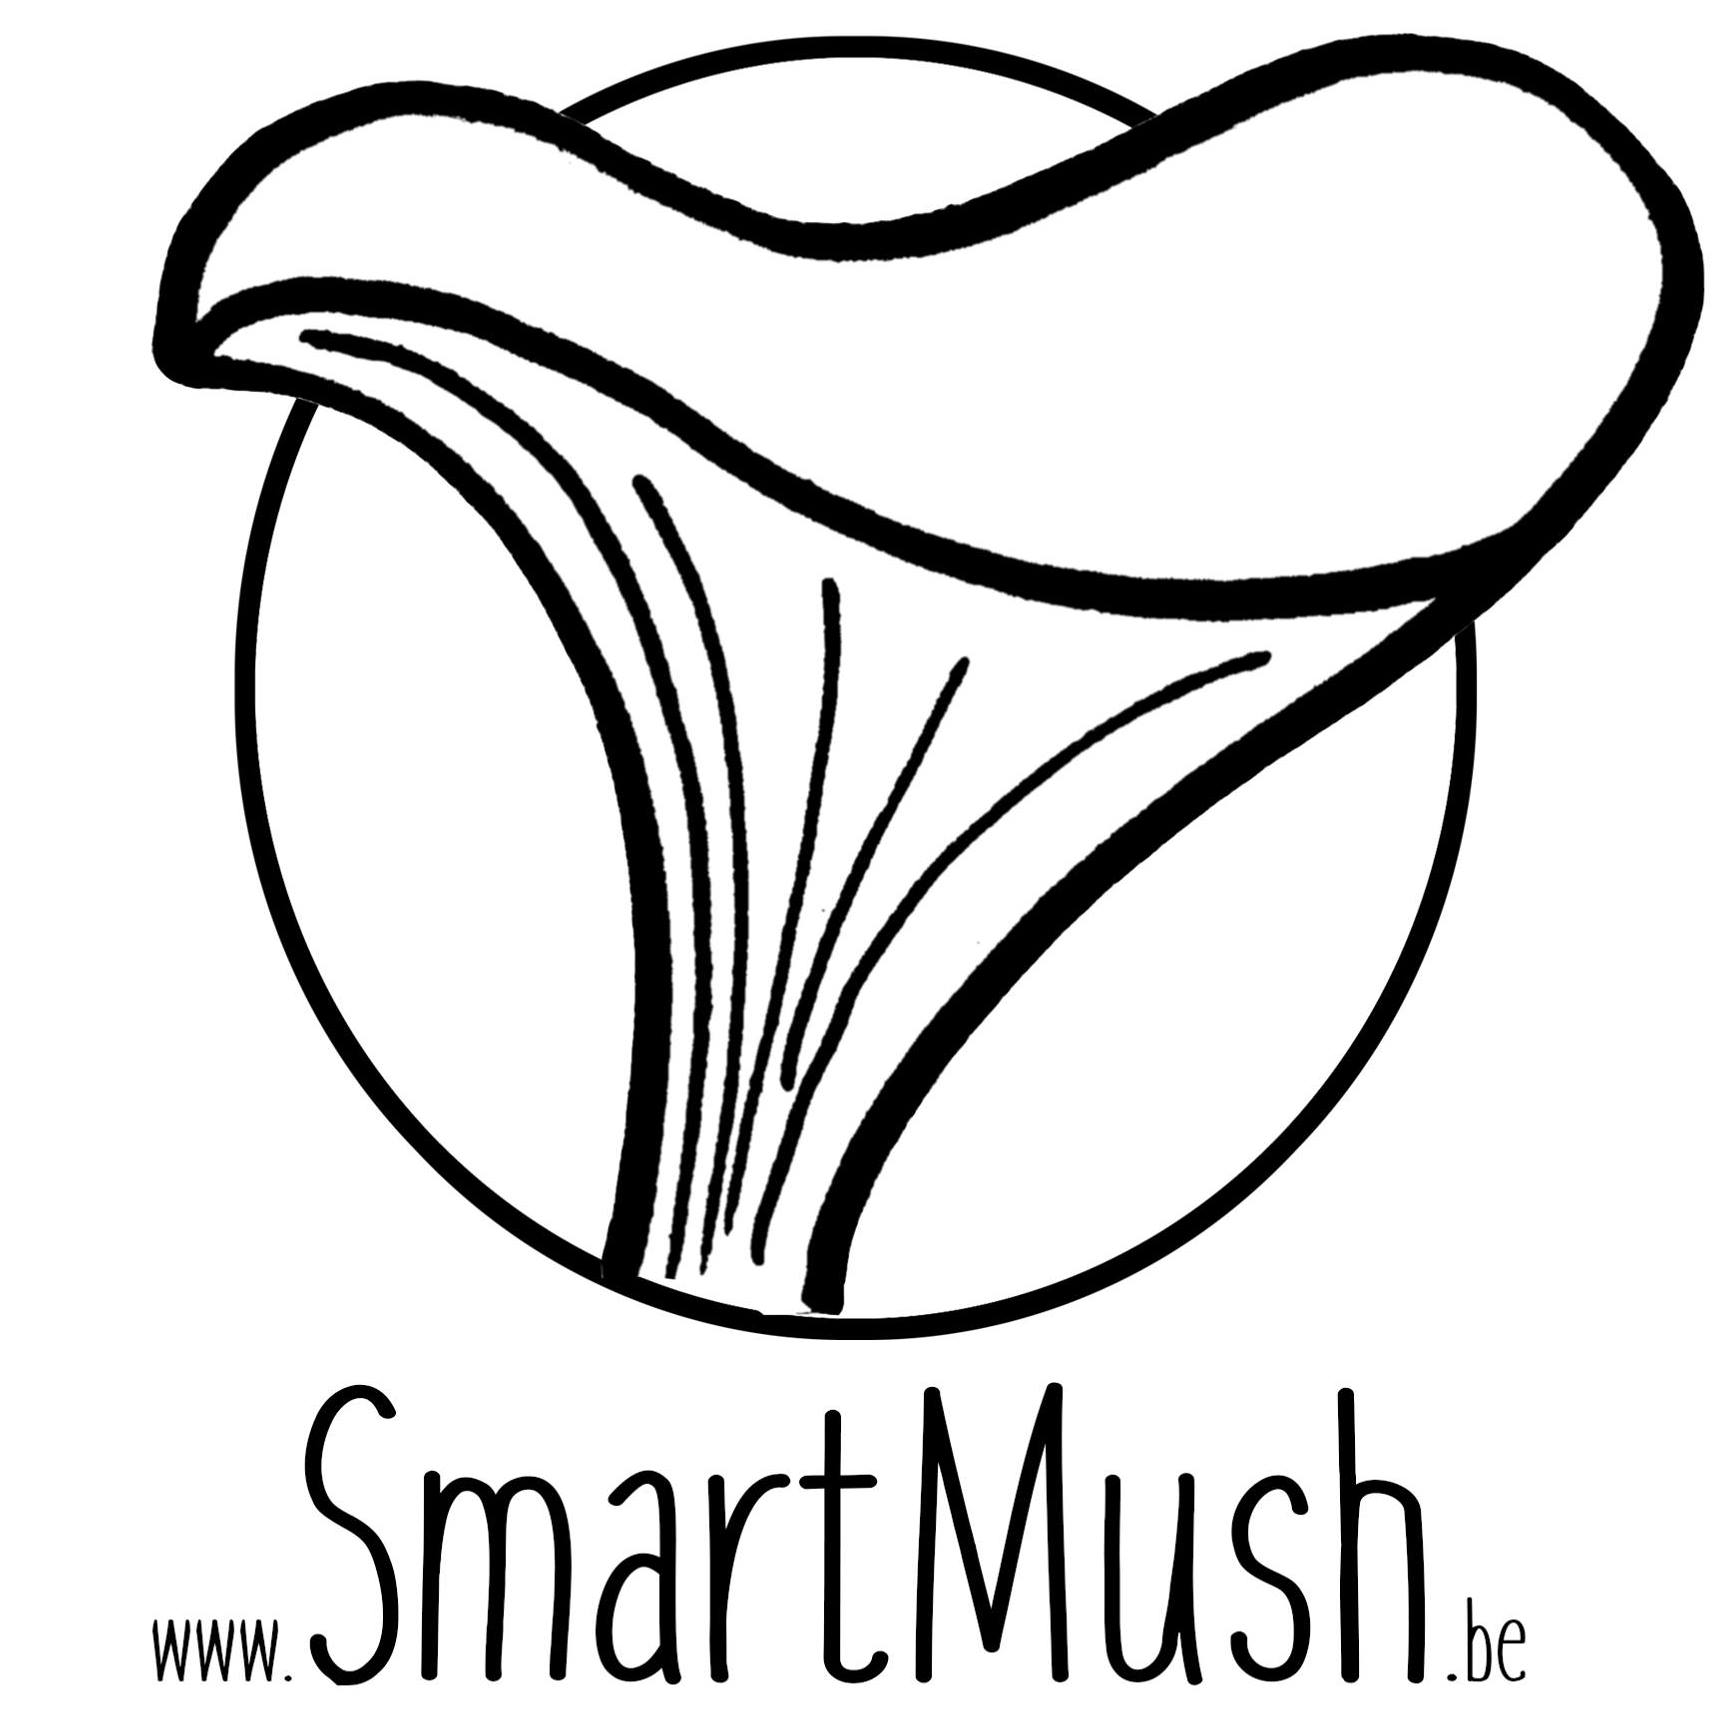 Les Champignons SmartMush